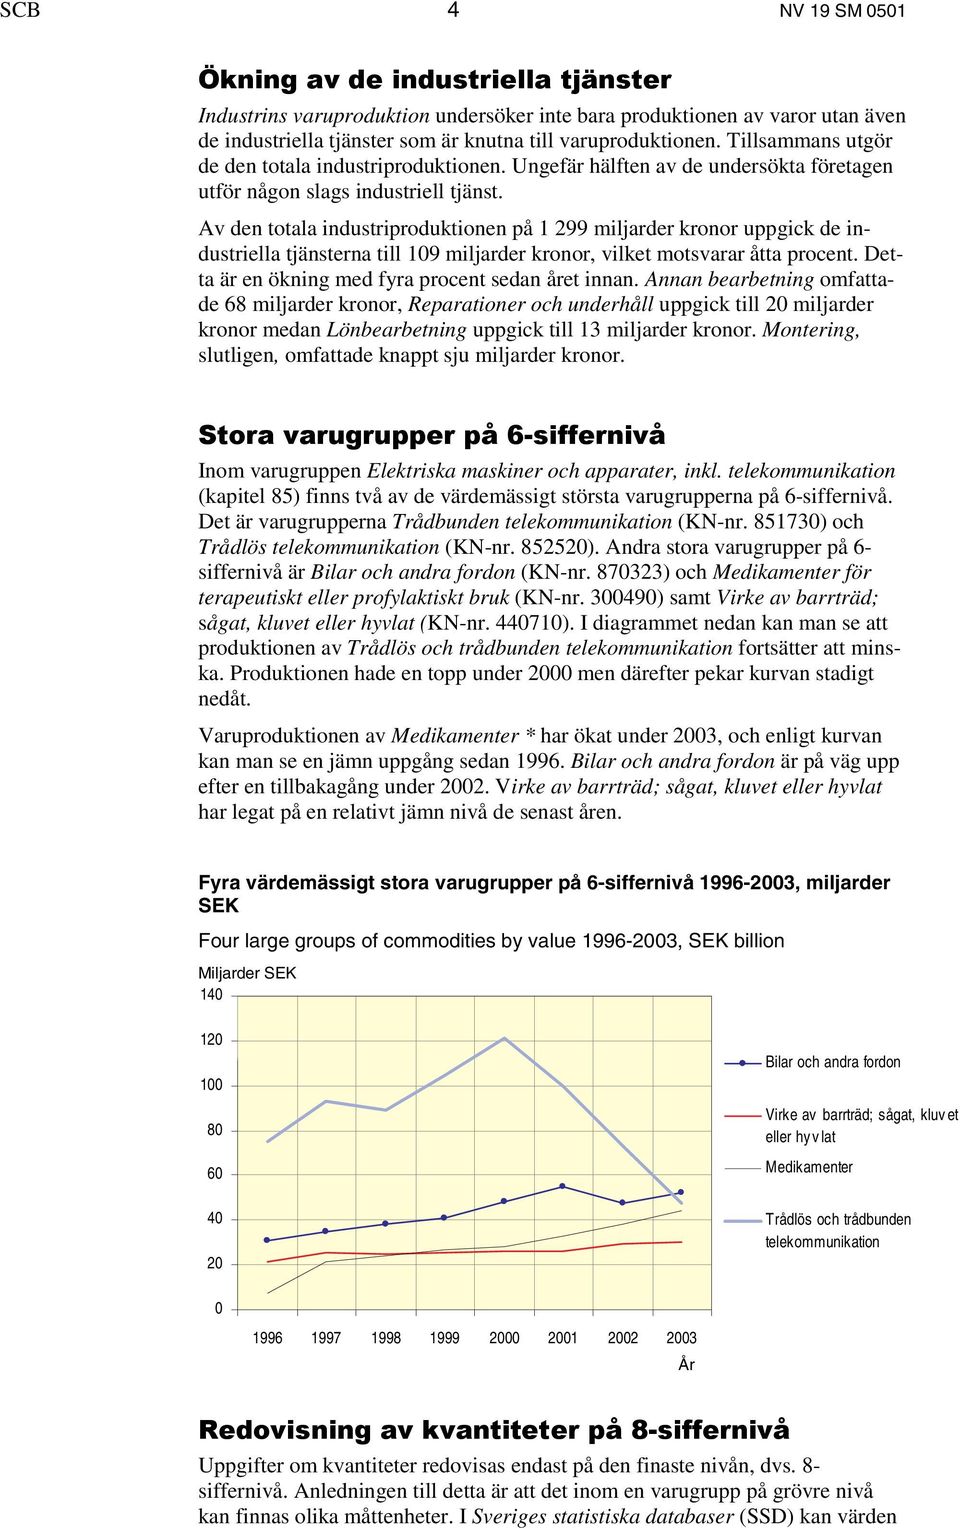 Måttlig ökning av svensk industriproduktion. Varugruppen Fordon ...